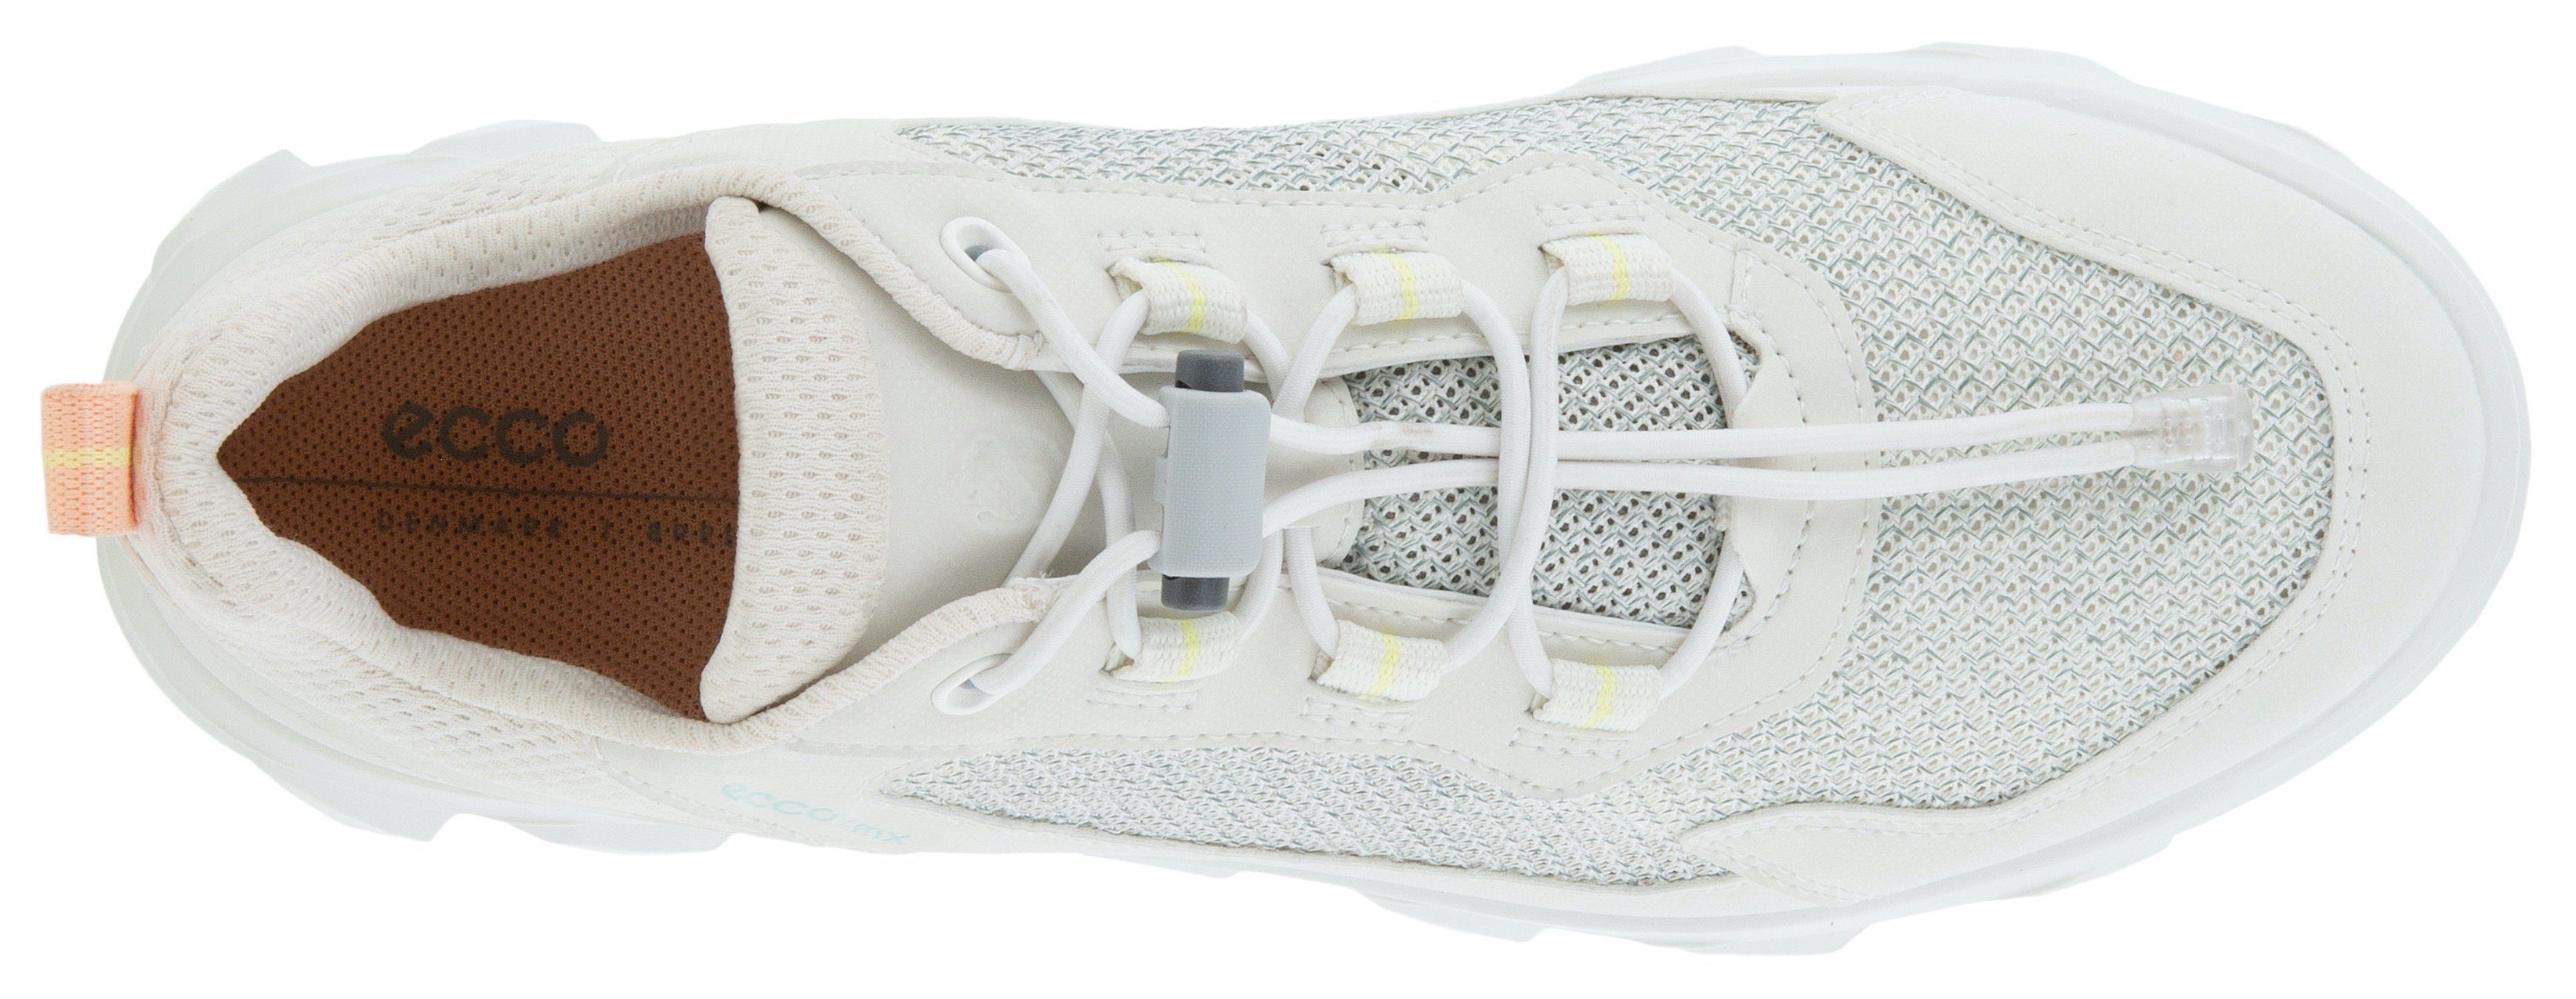 Ecco ECCO MX Sneaker weiß trittdämpfender Fluidform-Ausstattung mit Slip-On W